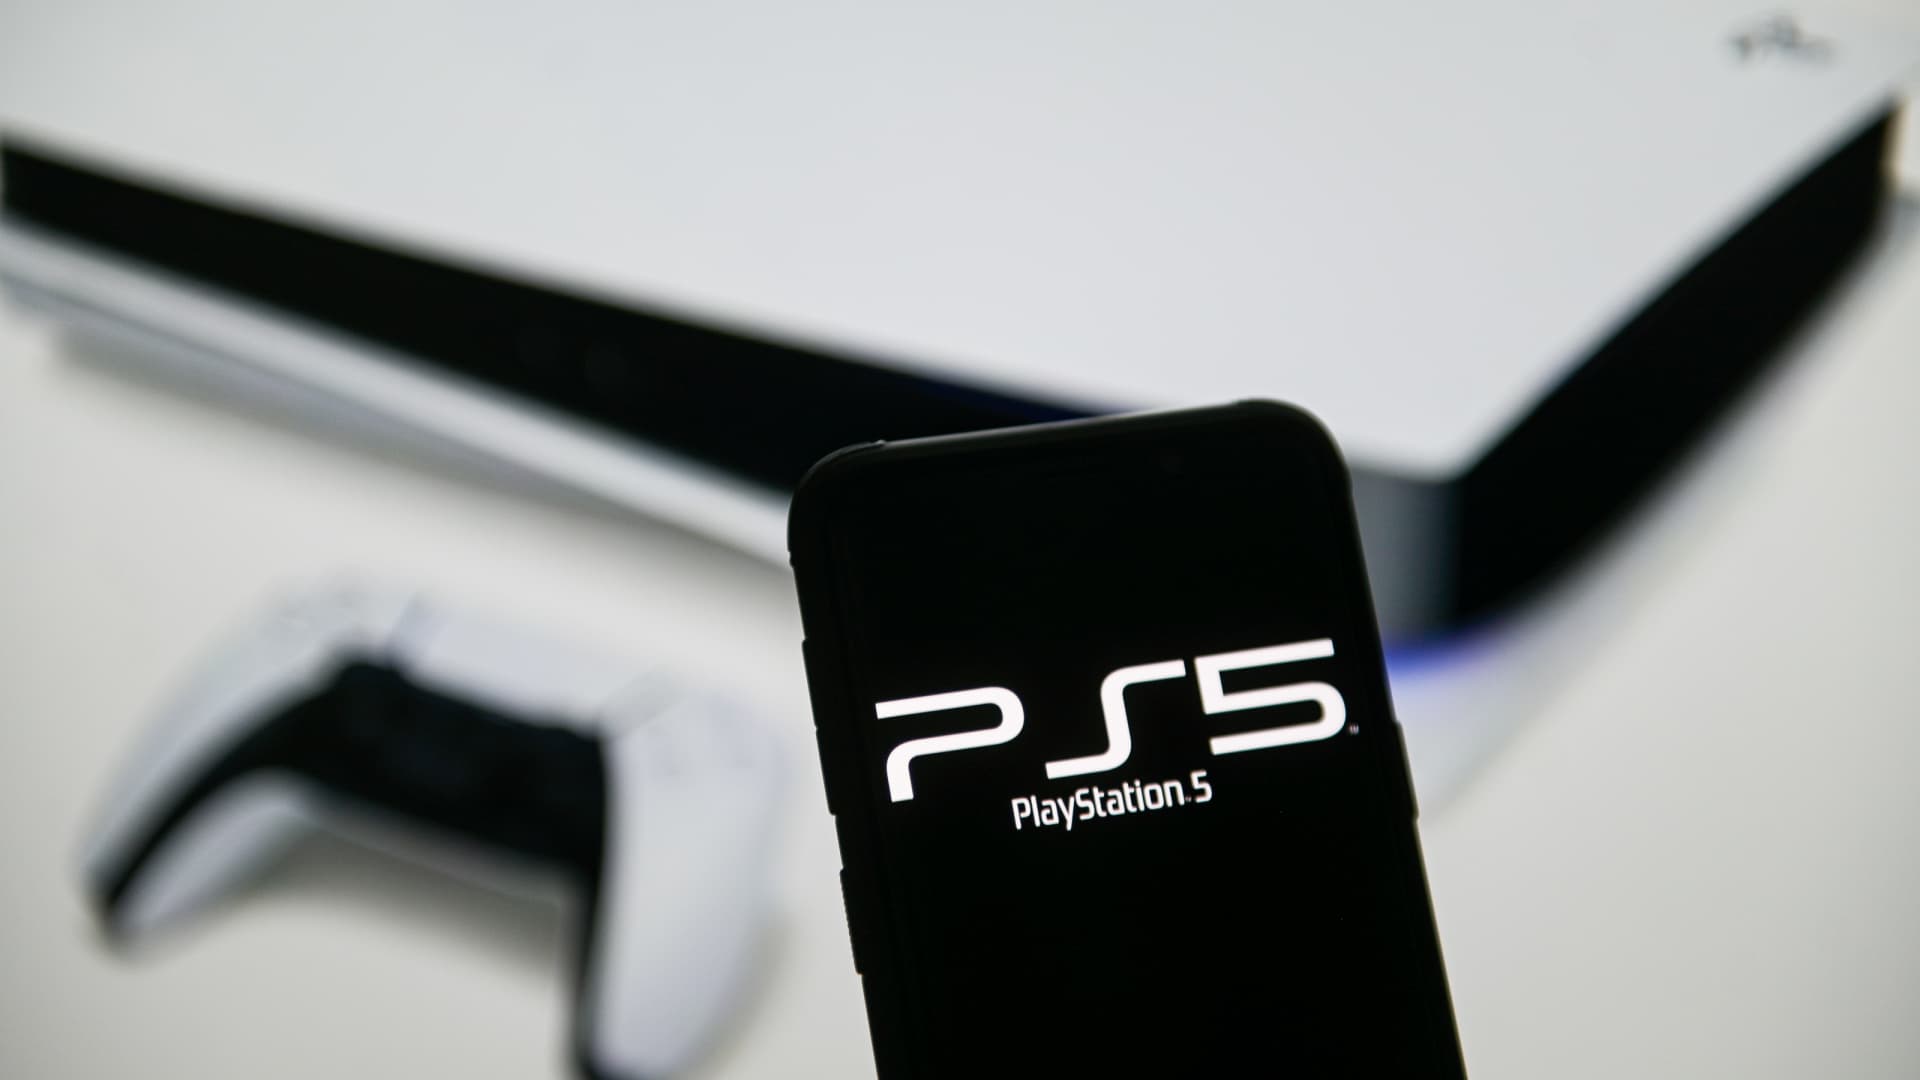 소니, 높은 인플레이션으로 PlayStation 5 가격 인상